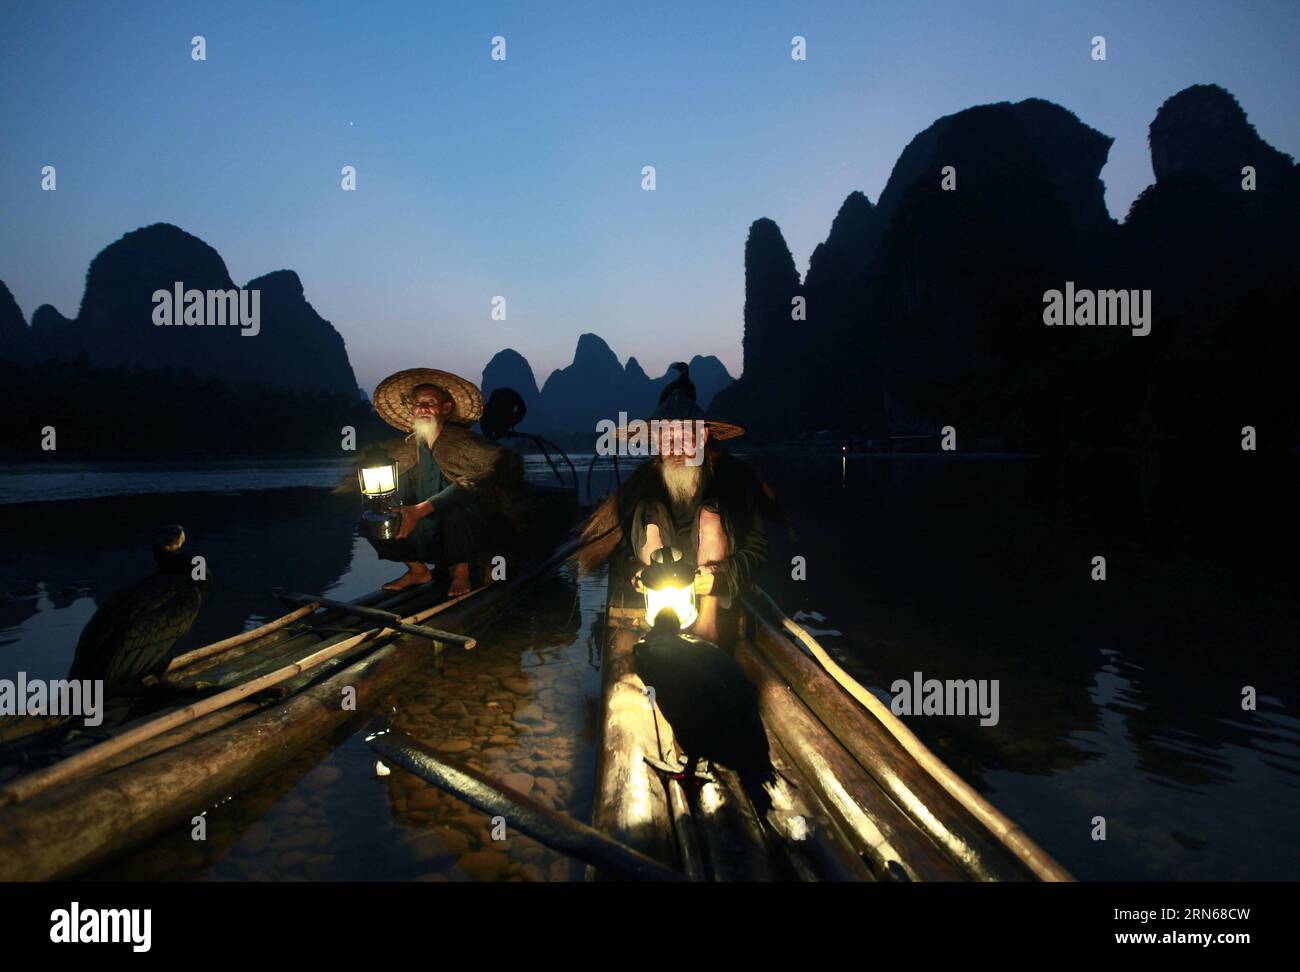 (150715) -- GUILIN, 15 juillet 2015 -- deux frères âgés de 70 et 80 ans, travaillant comme modèles de photographes, font une pause sur un radeau en bambou dans la rivière Lijiang de Guilin, dans la province du Guangxi du sud de la Chine, le 15 juillet 2015.) (xcf) CHINA-GUANGXI-GUILIN-LIJIANG RIVER-LIFE (CN) LiuxJiaoqing PUBLICATIONxNOTxINxCHN 150715 Guilin juillet 15 2015 deux frères dans les années 70 et 80 travaillant comme modèles photo S font une pause SUR un radeau en bambou dans la rivière Lijiang de Guilin Chine méridionale S Guangxi province juillet 15 2015 xcf Chine Guangxi dans la rivière Lijiang vie CN LiuxJiaoqing PUBLICATIONxNOTxINxCHN Banque D'Images